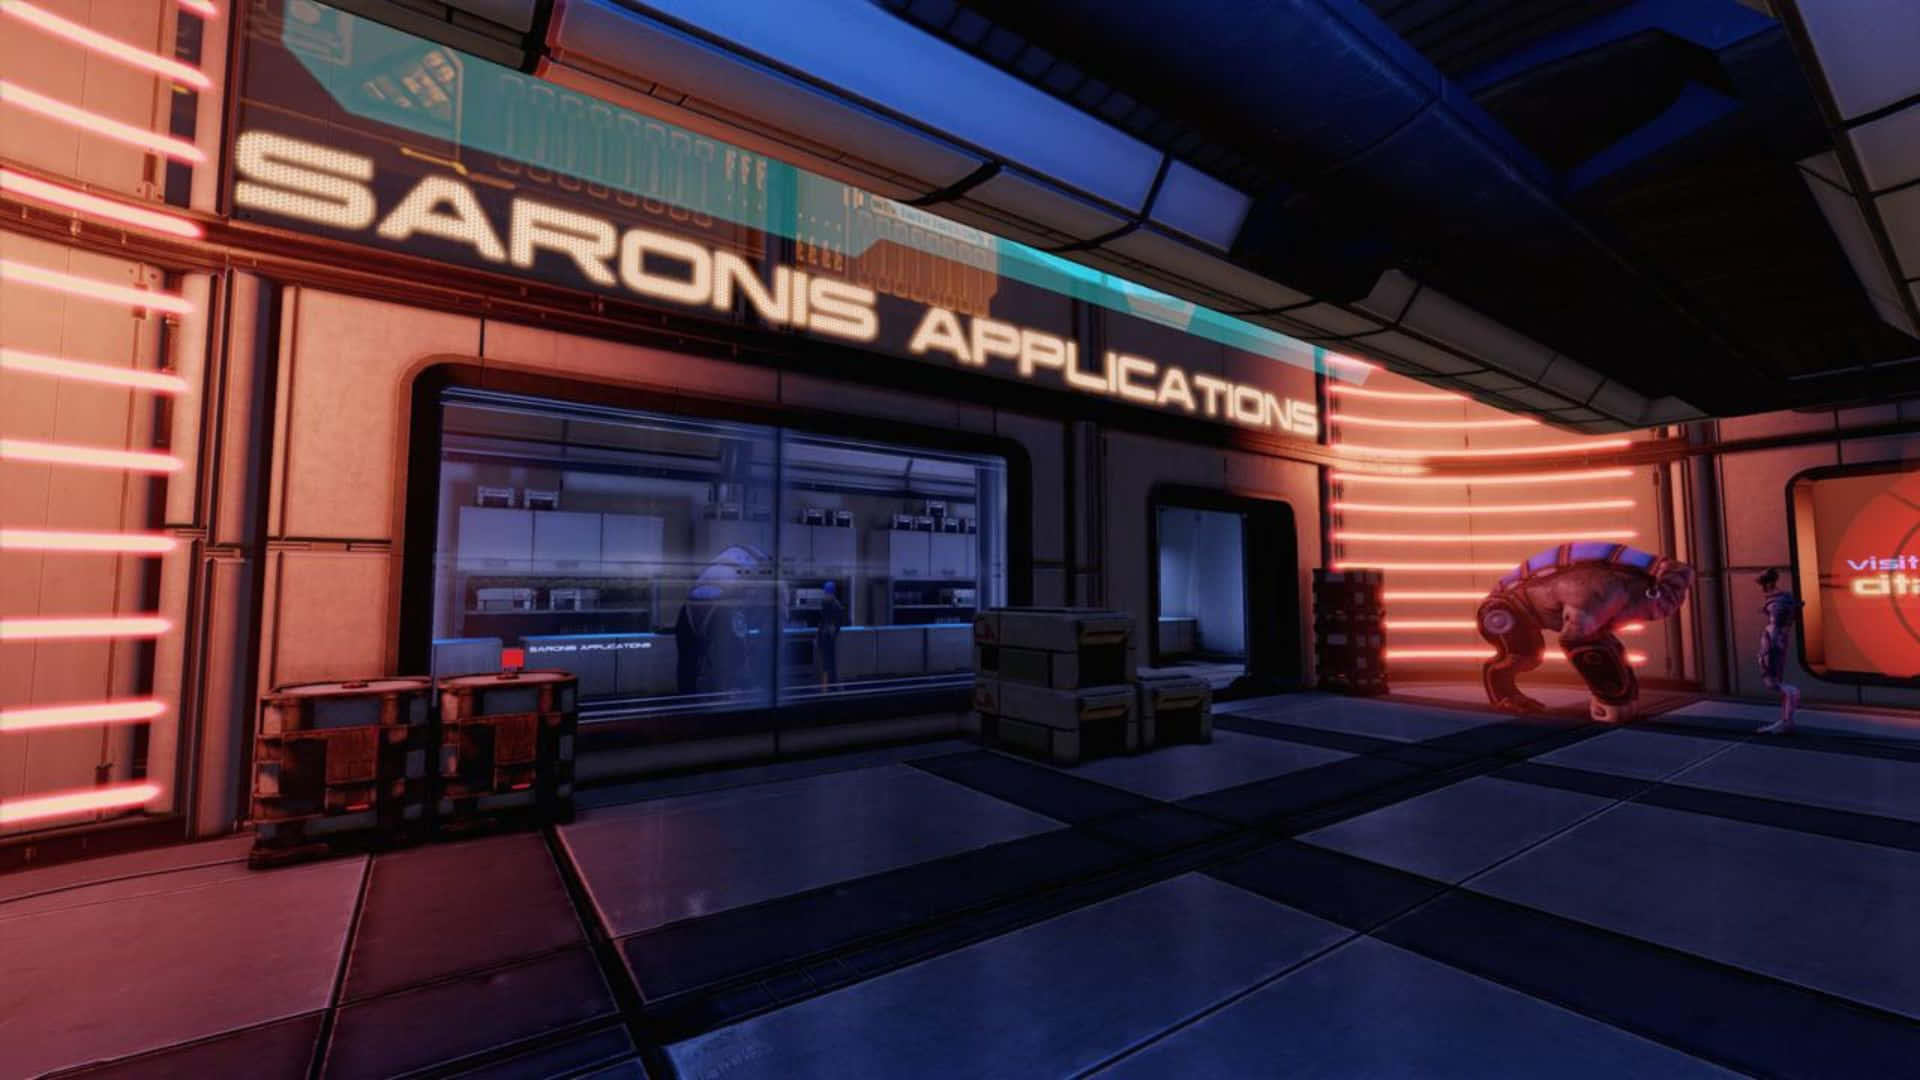 Impresionantevista De La Ciudadela De Mass Effect En Alta Resolución. Fondo de pantalla